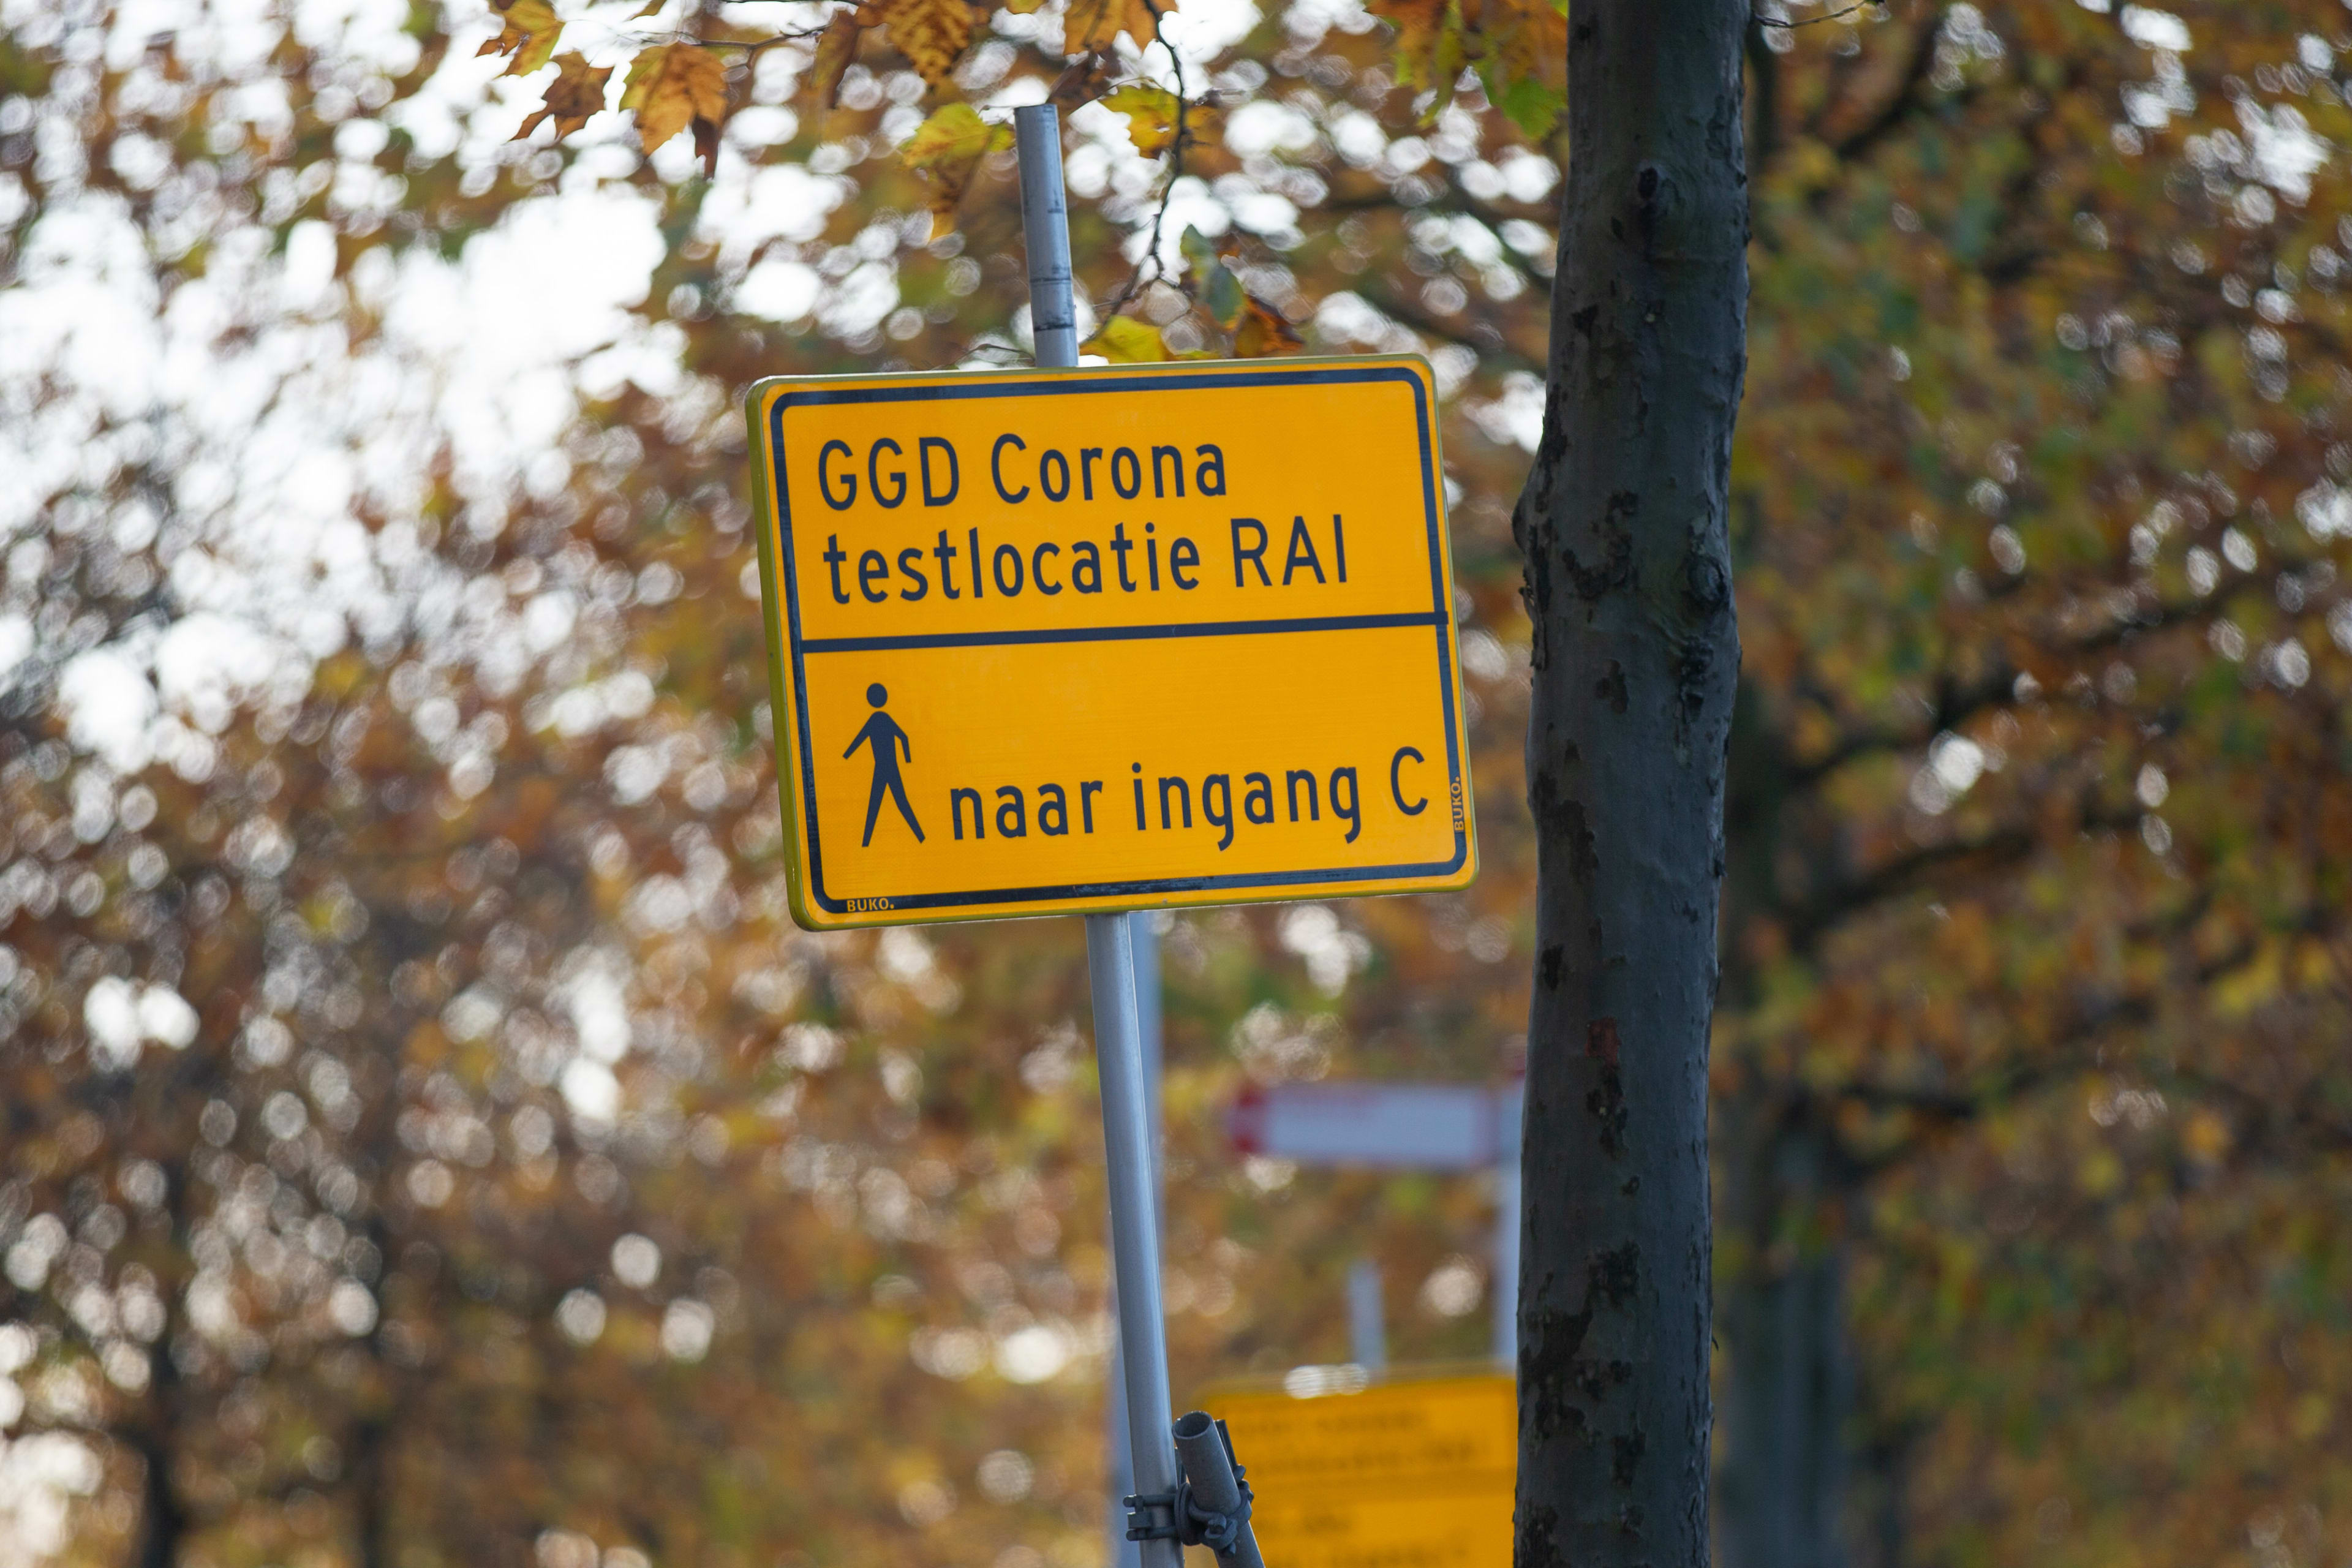 Brandstichting bij testlocatie in Urmond, ruiten ingegooid in Amsterdam